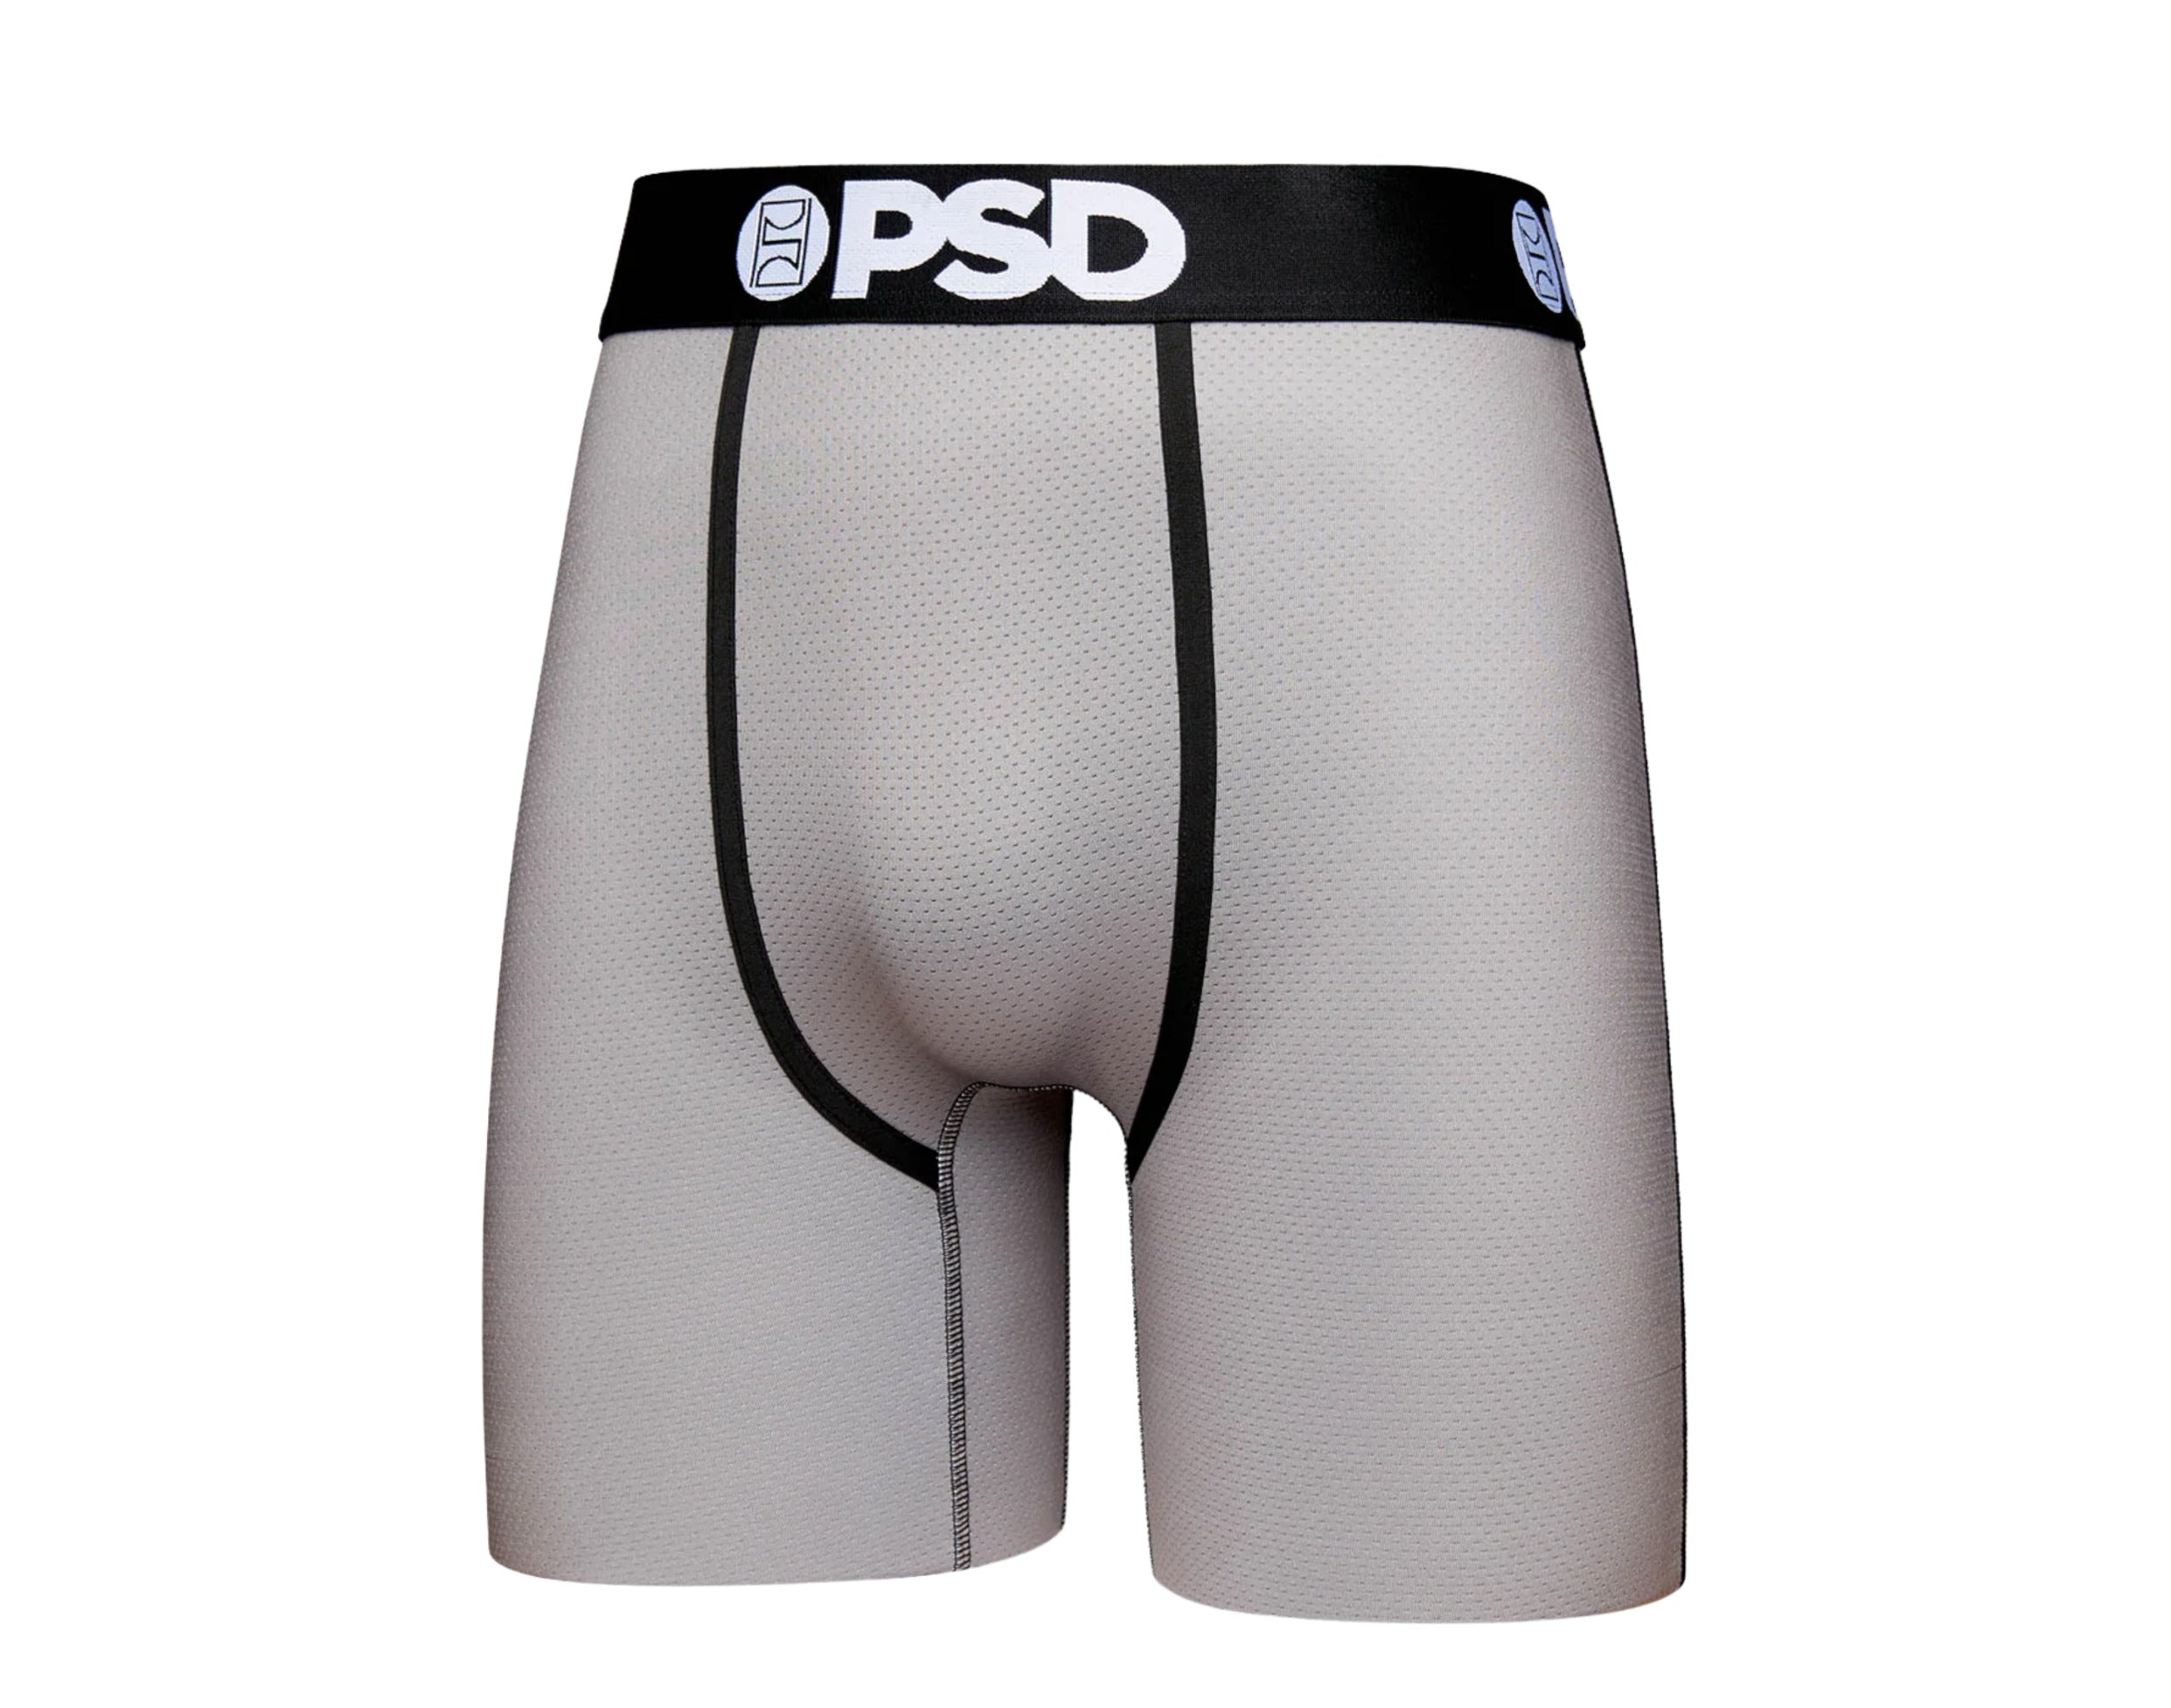 PSD Men's Solids Blk 3-Pack Boxer Briefs, Black, XXL